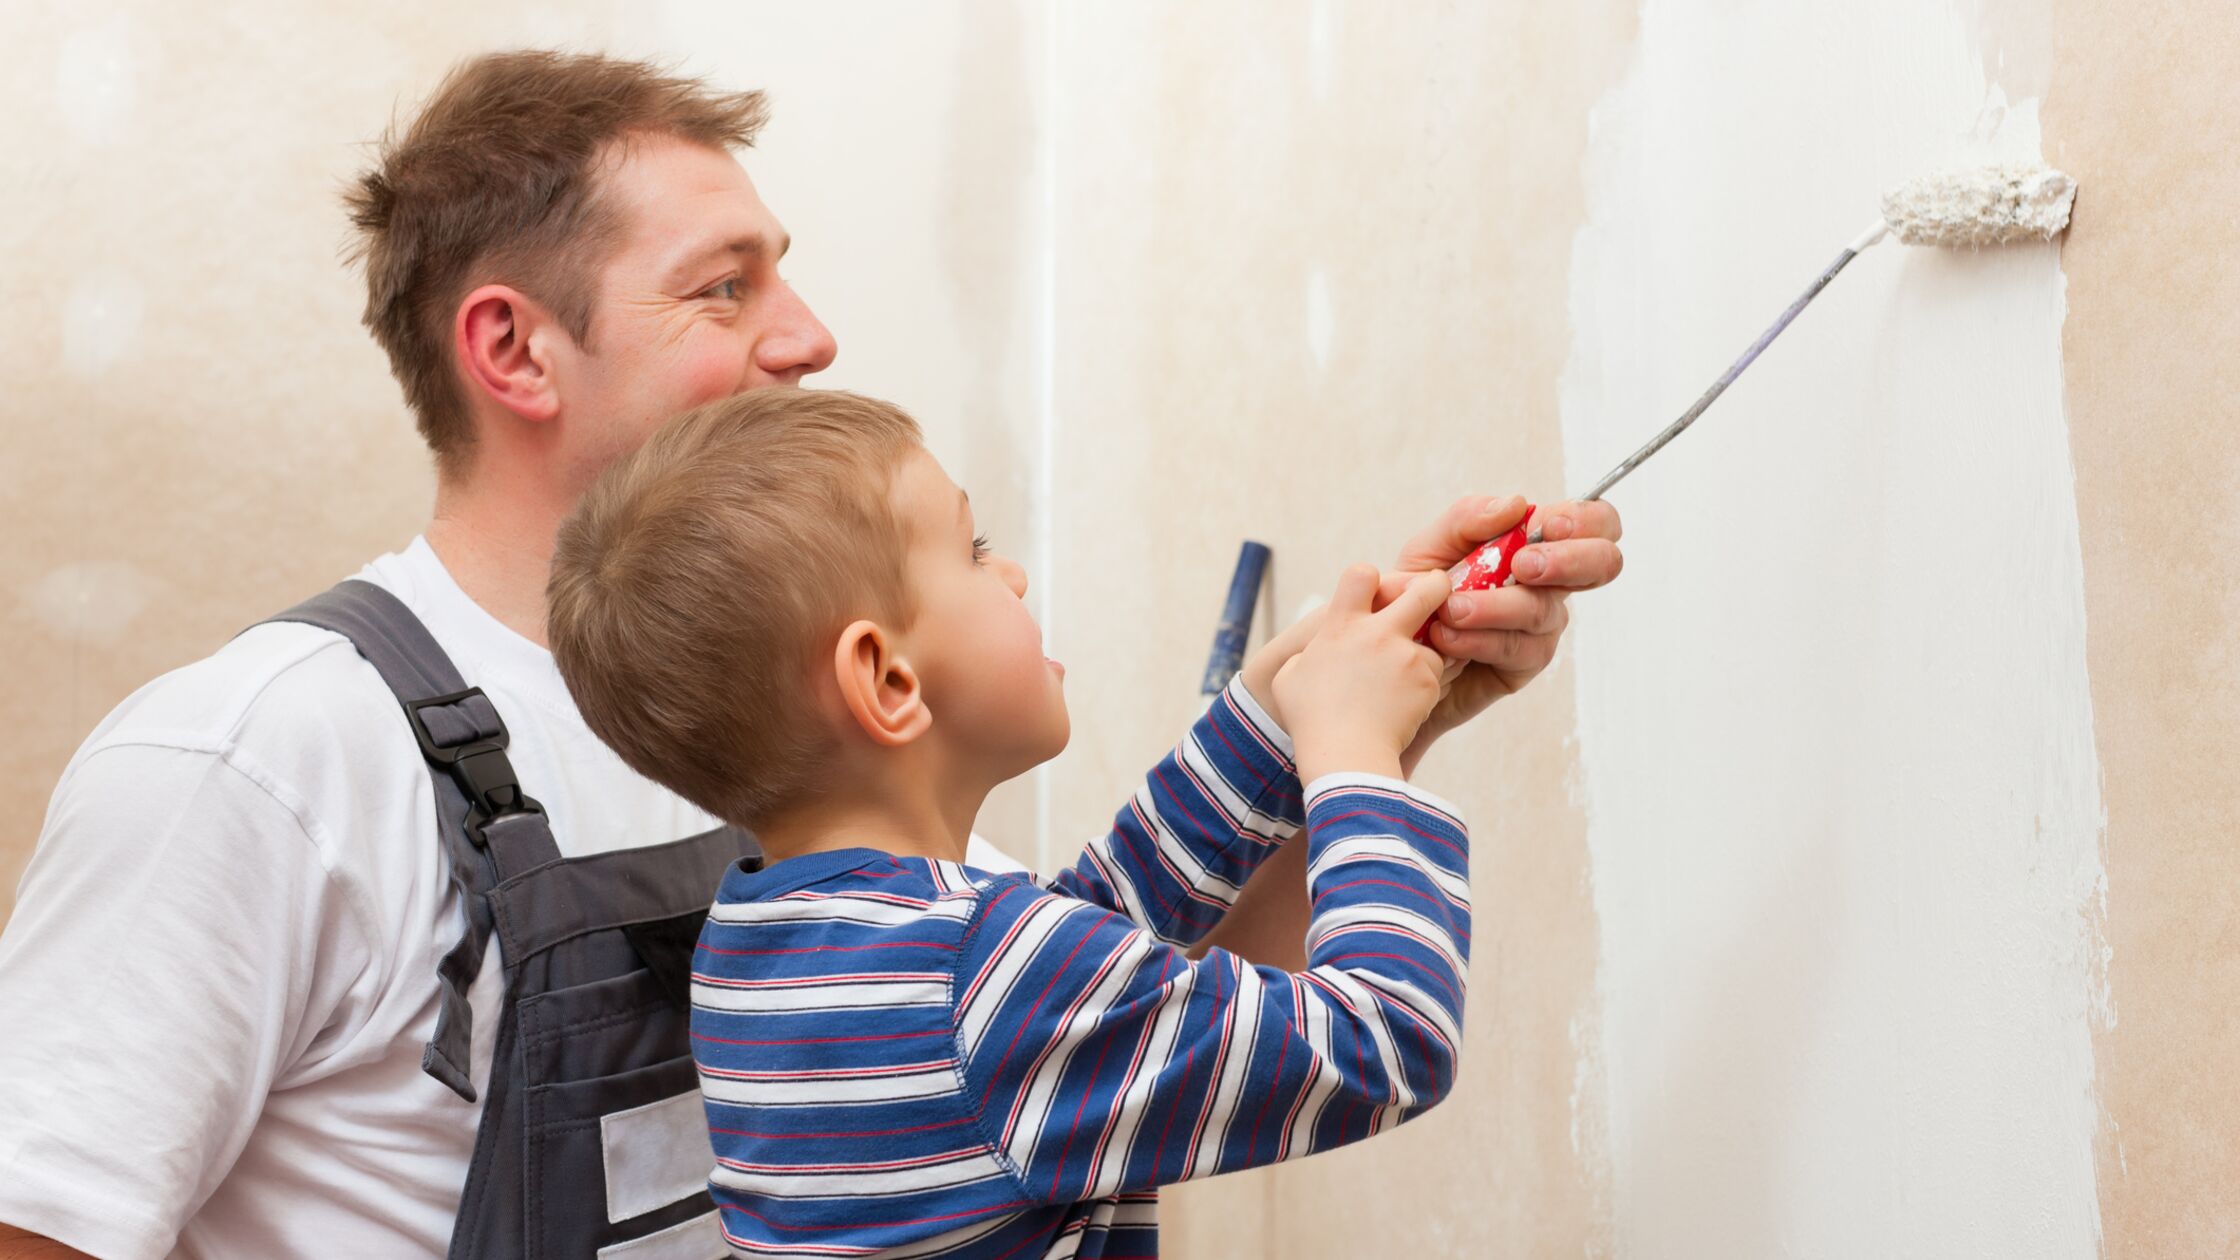 Schönheitsreparaturen: Ein Mann und ein junge streichen gemeinsam eine Wand.